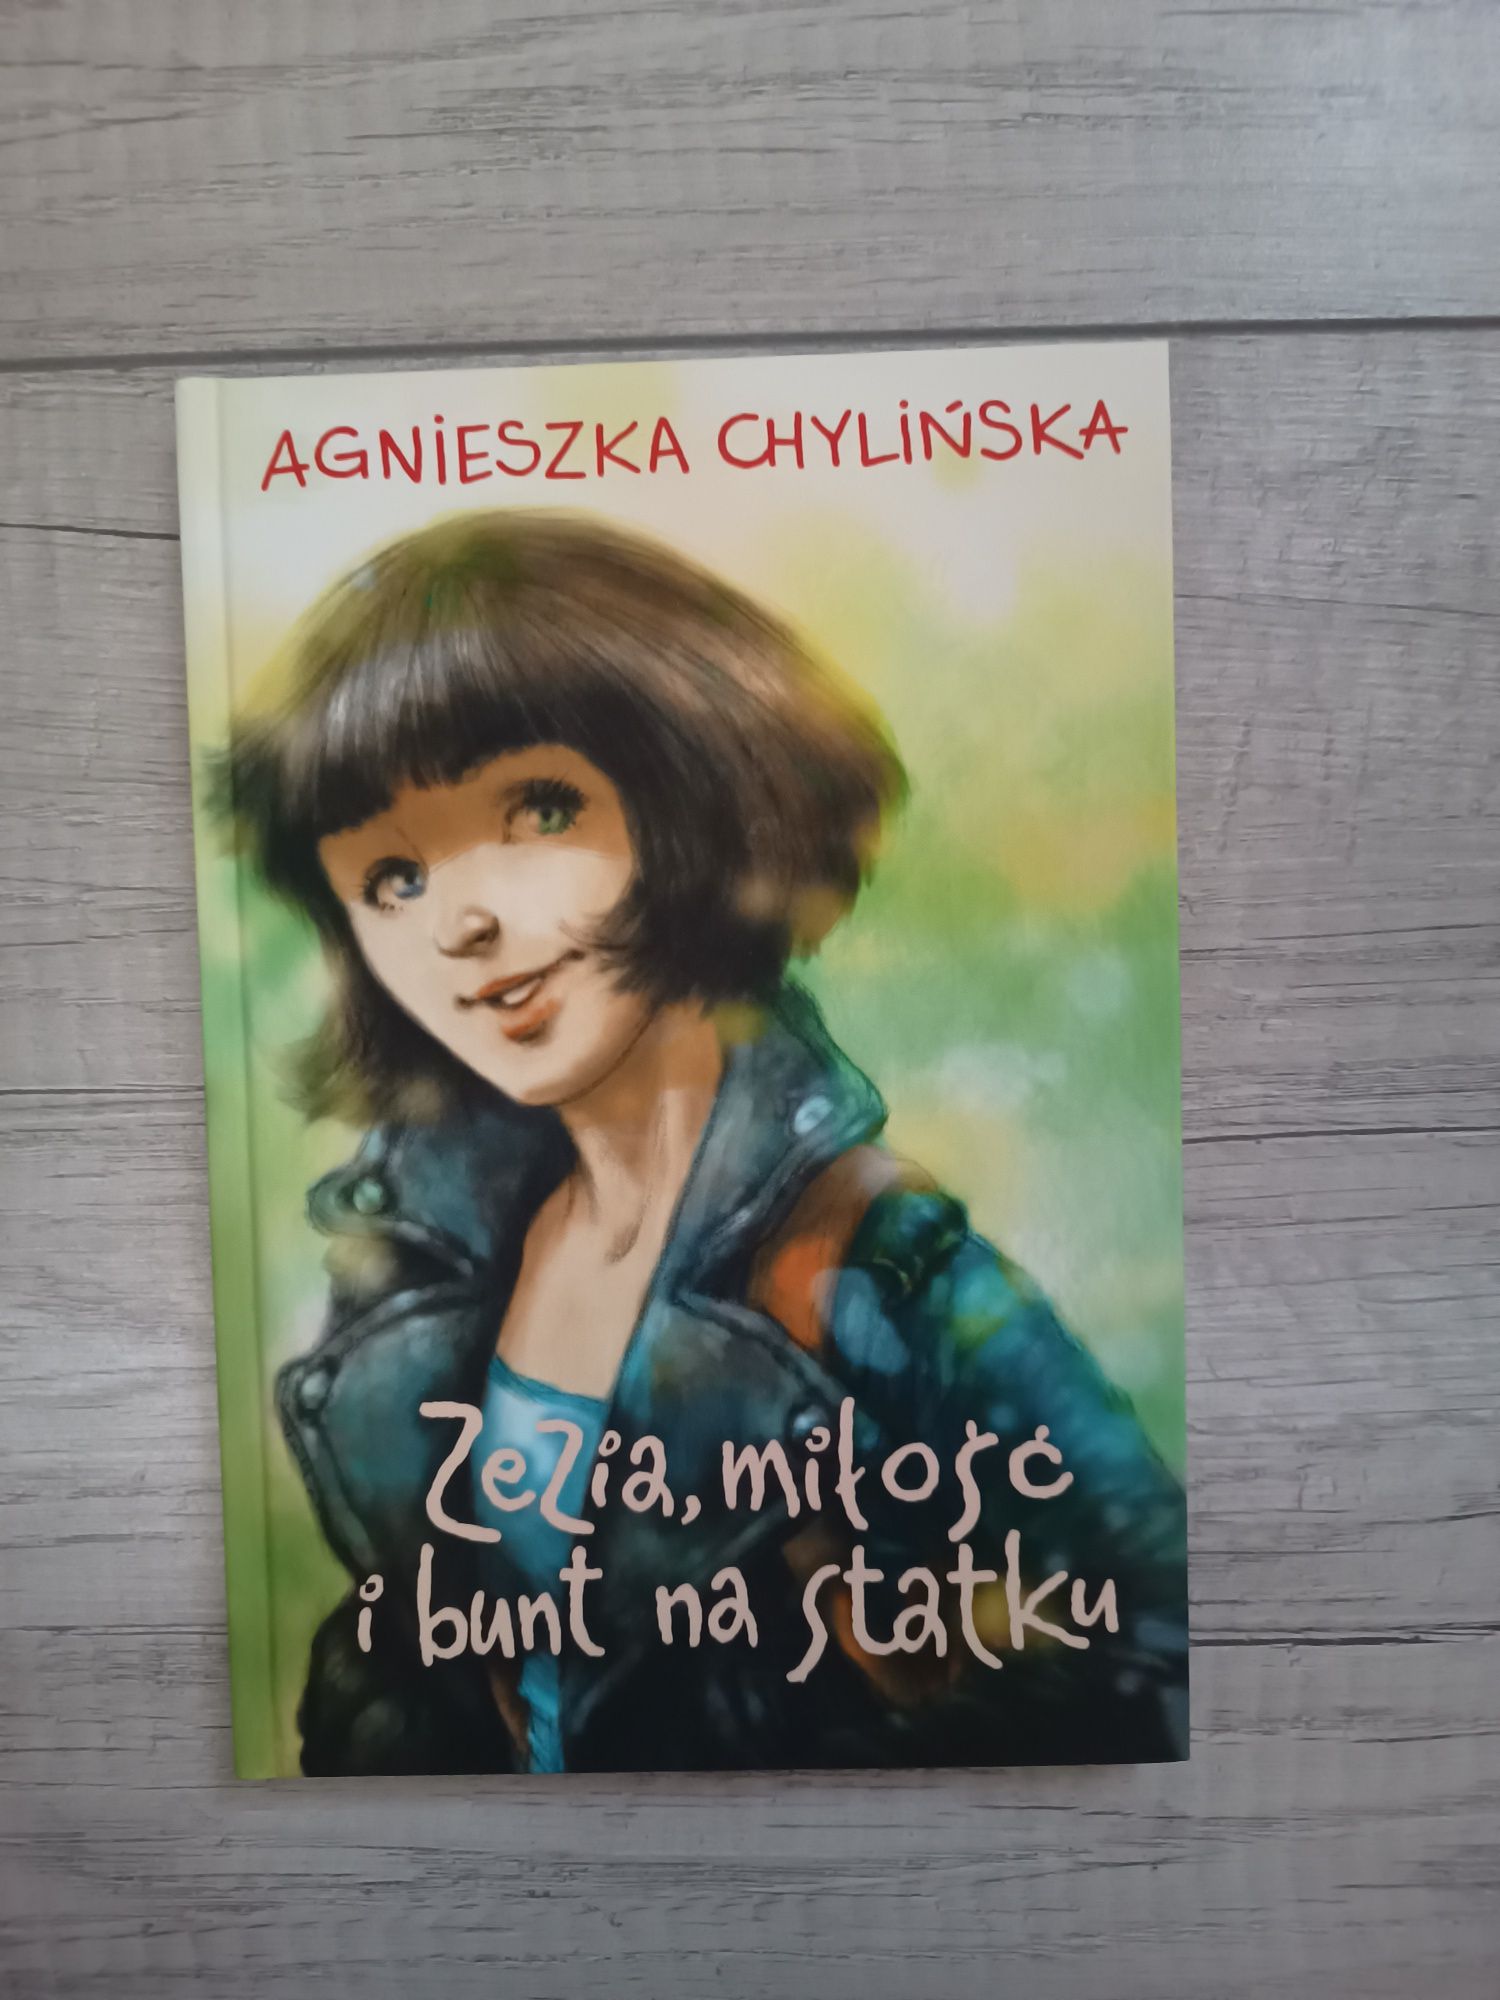 Nowa książka Agnieszka Chylińska Zezia, miłość i bunt na statku